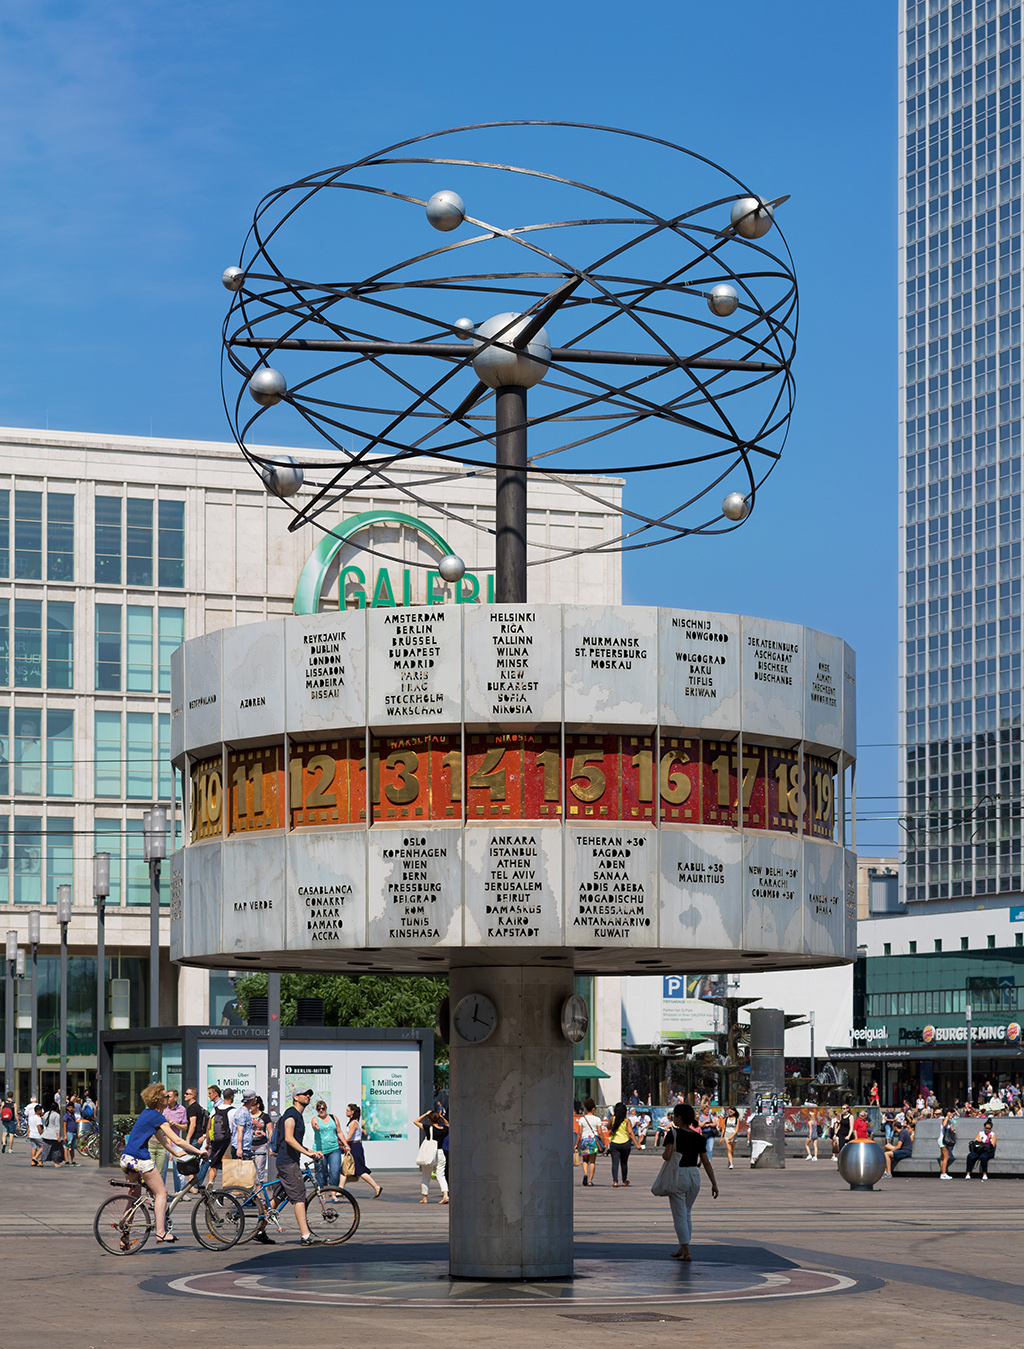 Urania-Weltzeituhr auf dem Alexanderplatz in Berlin 2015